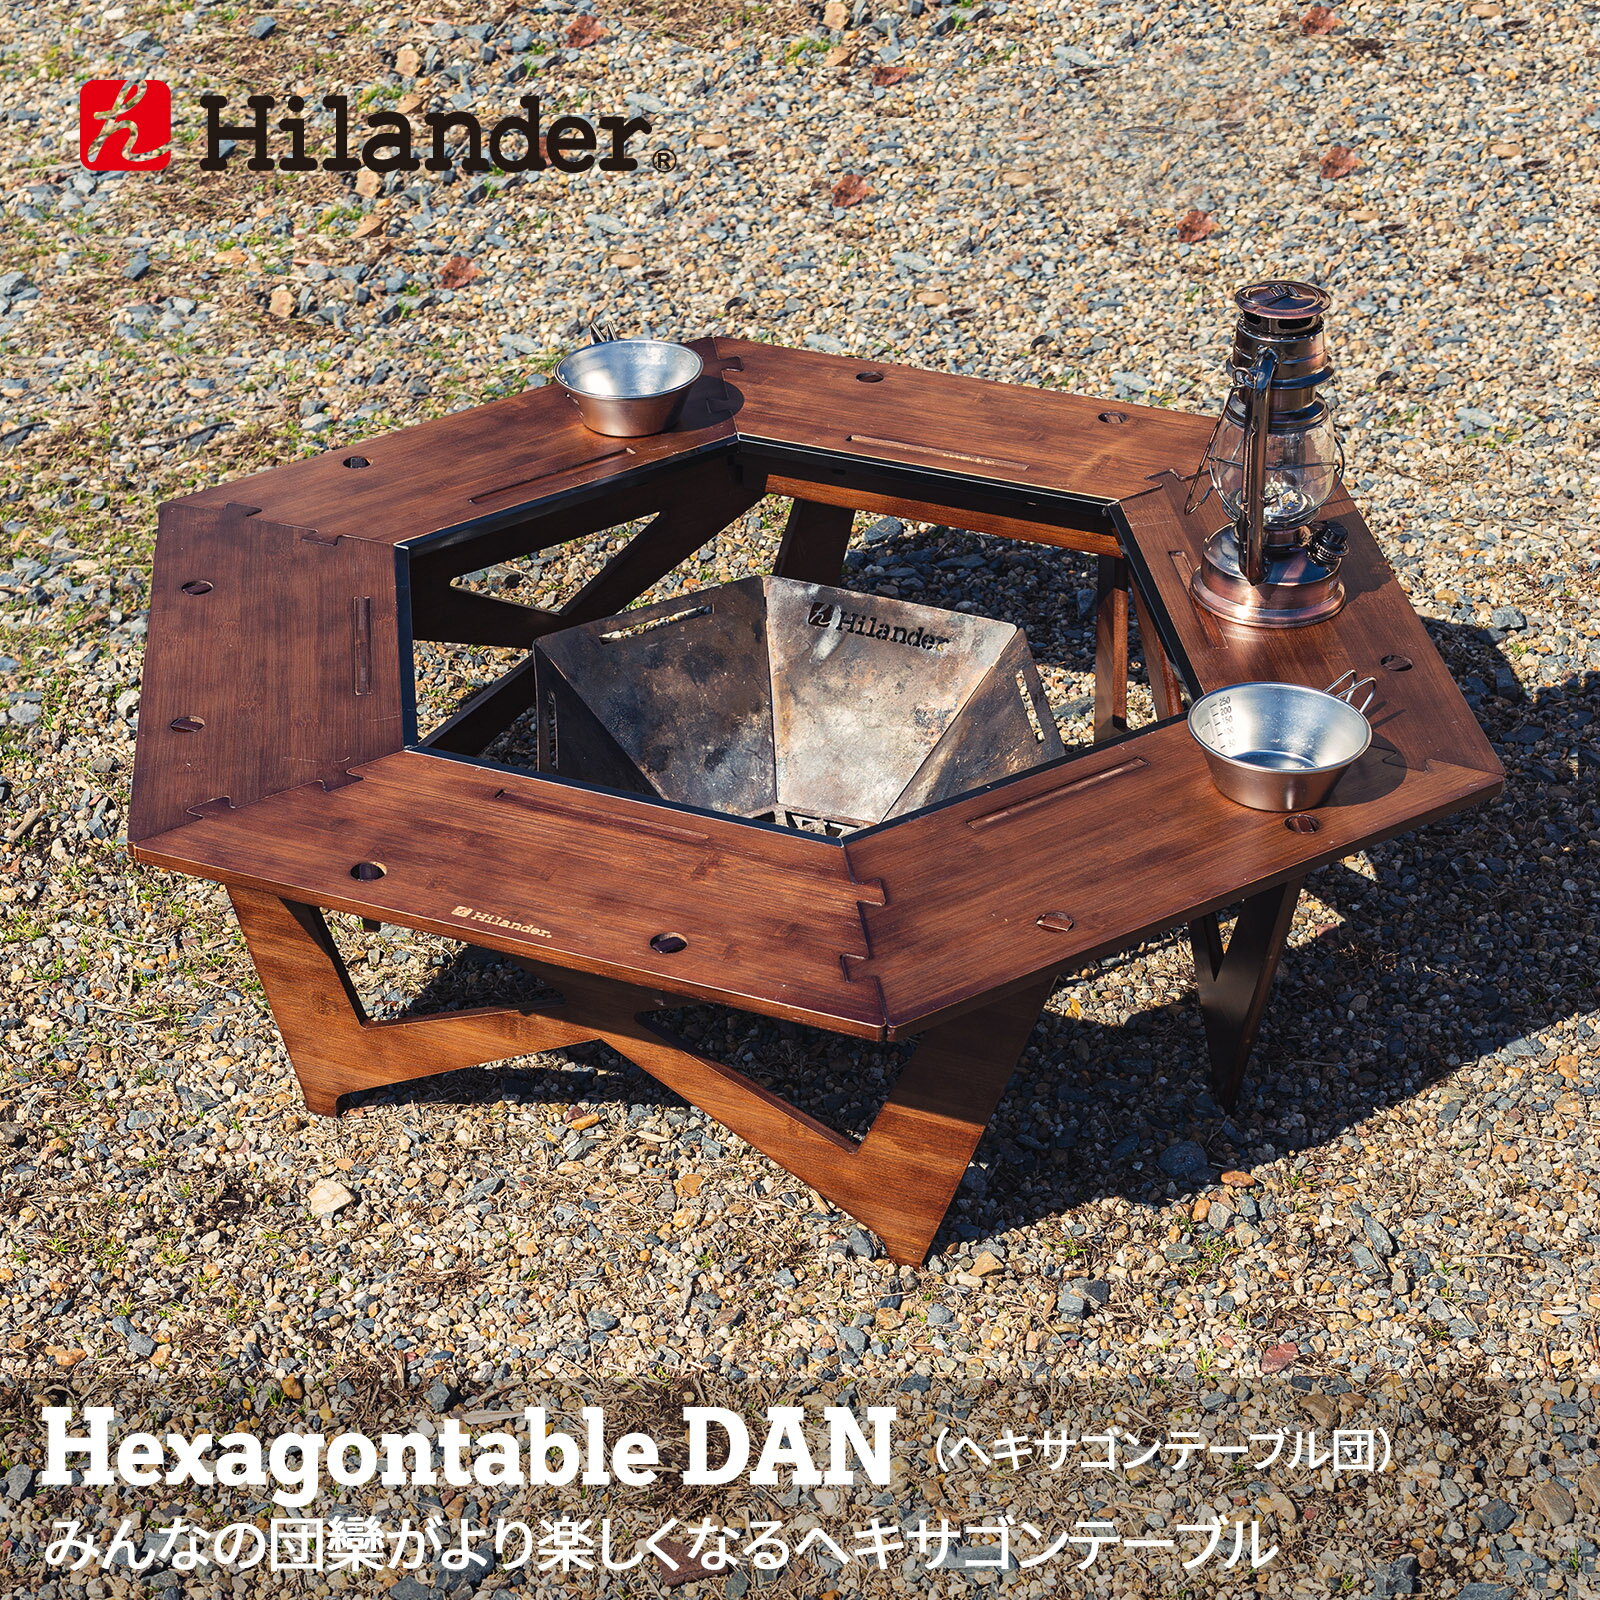 Hilander(ハイランダー) ヘキサゴンテーブル DAN アウトドアテーブル 焚き火テーブル 囲炉裏テーブル【1年保証】 DAN HCT-026